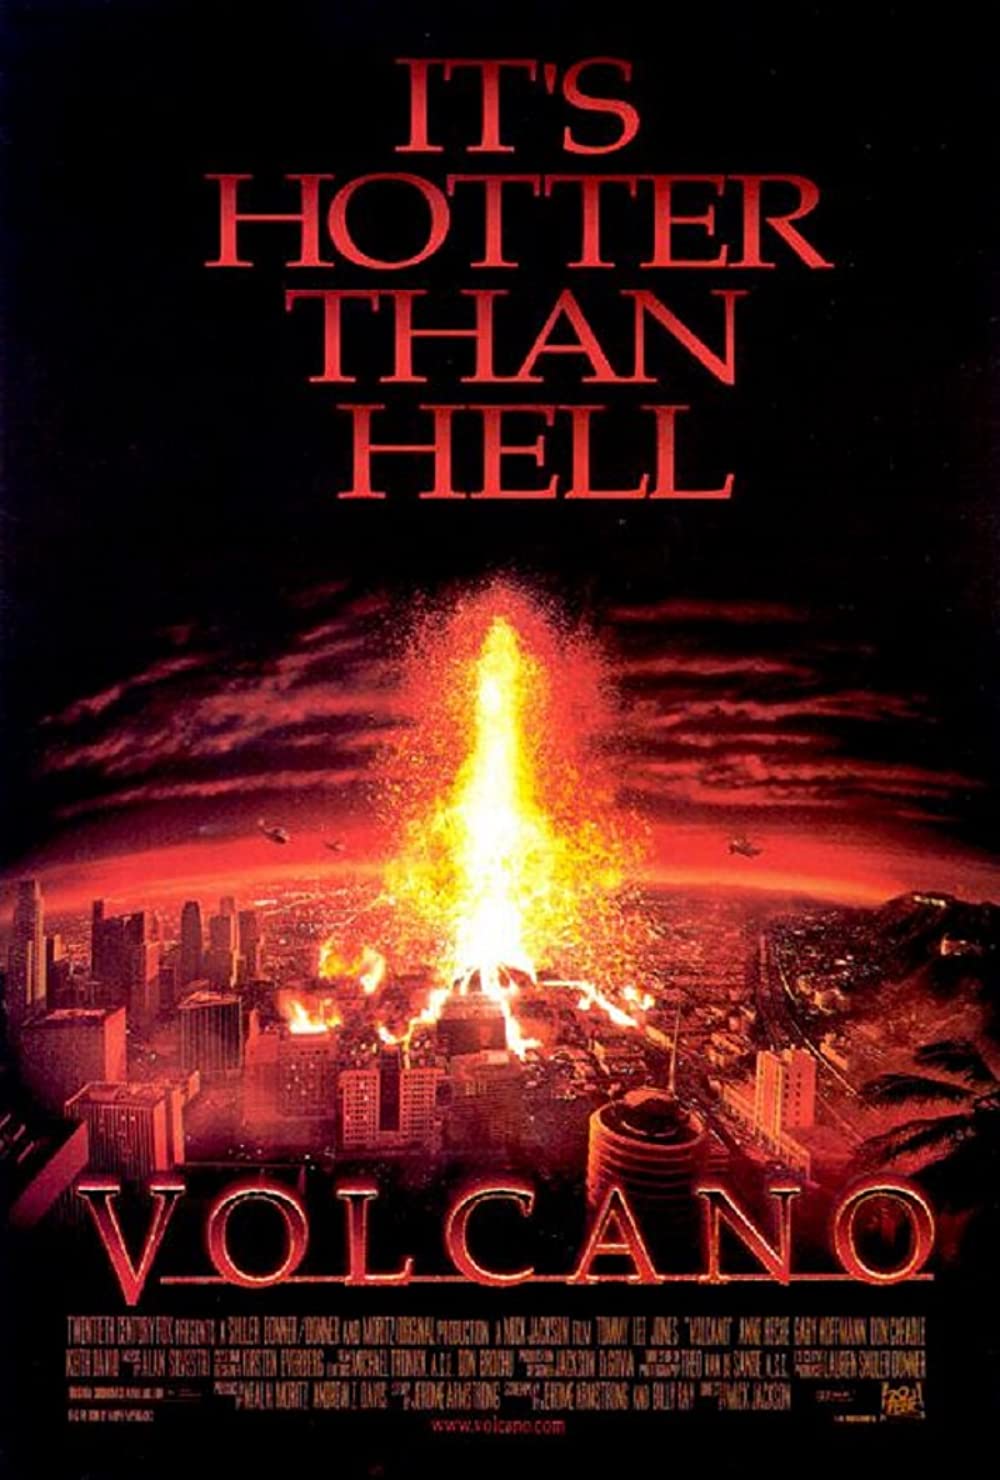 Filmbeschreibung zu Volcano (1997)